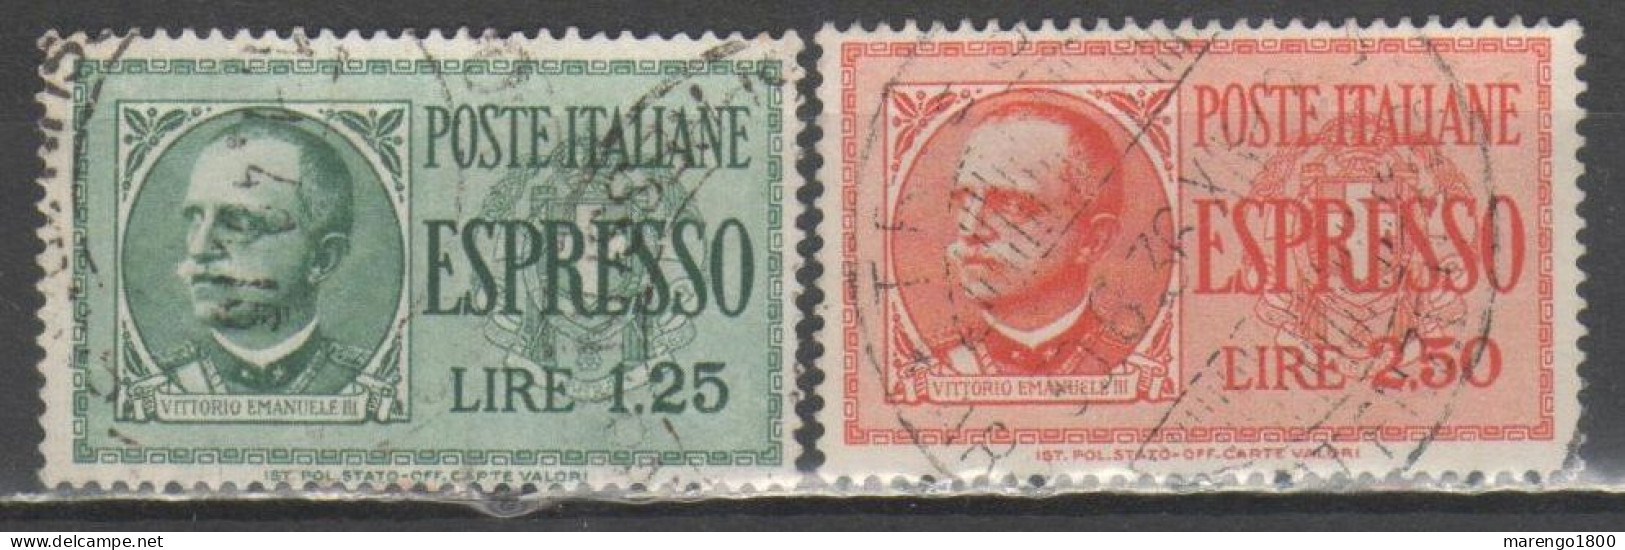 ITALIA 1932-33 - Espressi - Posta Espresso